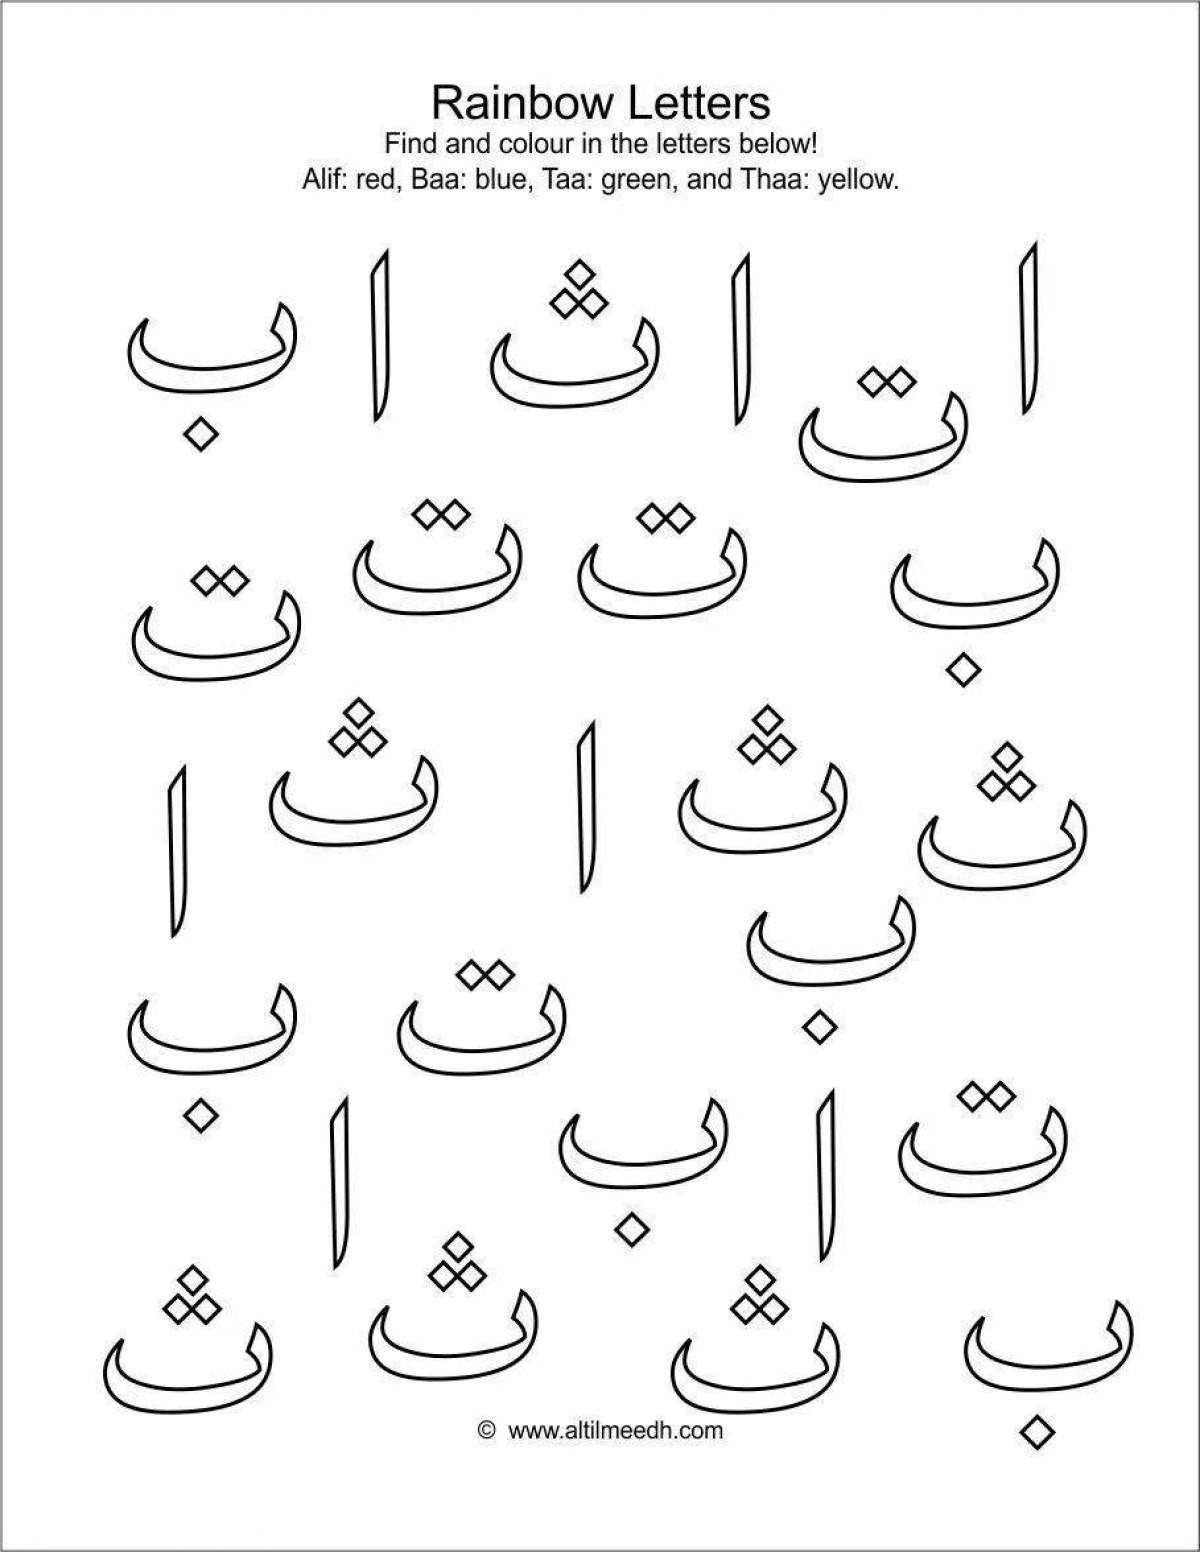 Красочная страница-раскраска арабского алфавита для детей любого происхождения